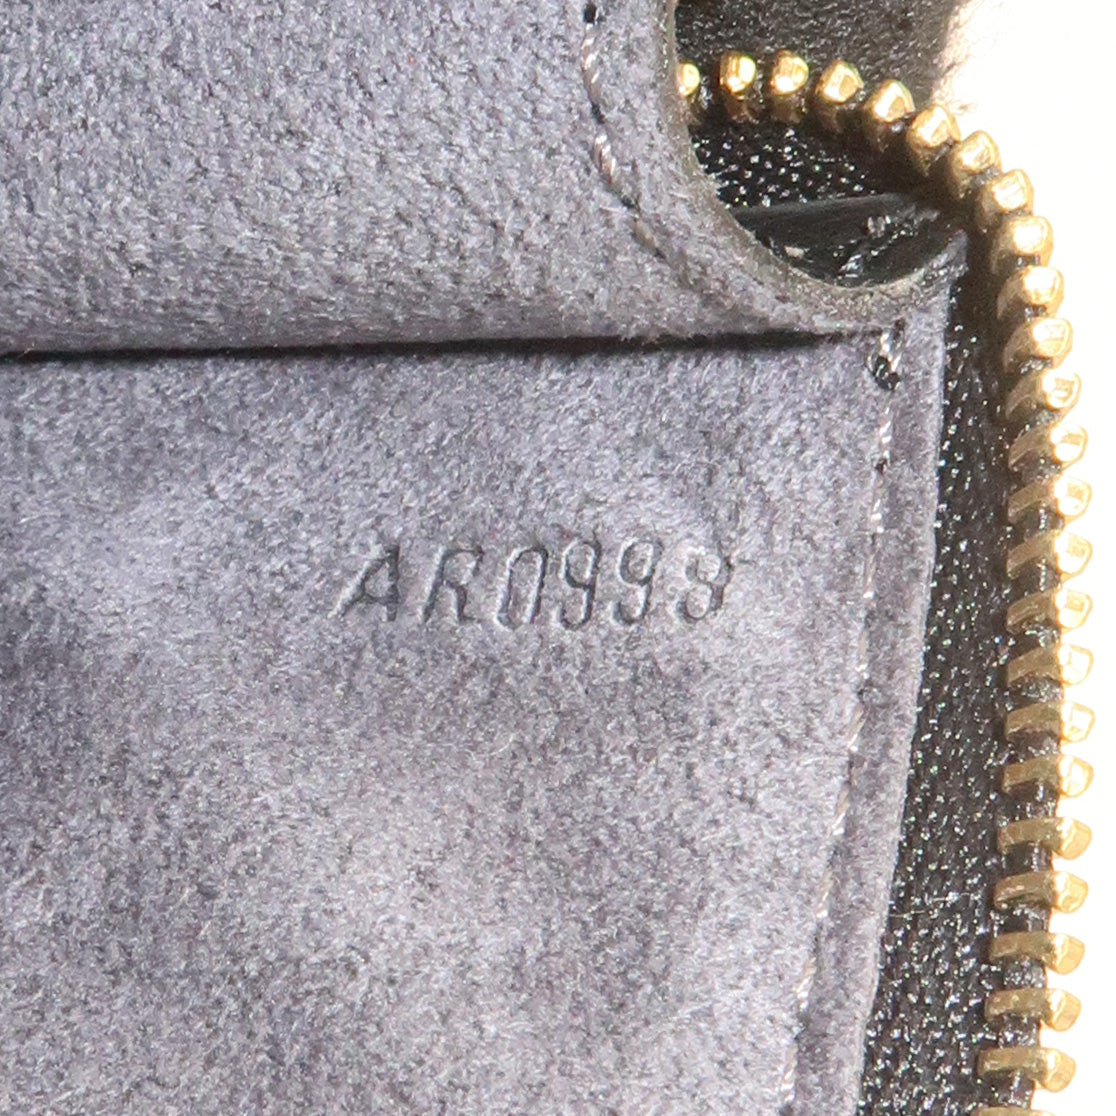 Louis Vuitton - Pochette Accessoires Epi Leather Noir